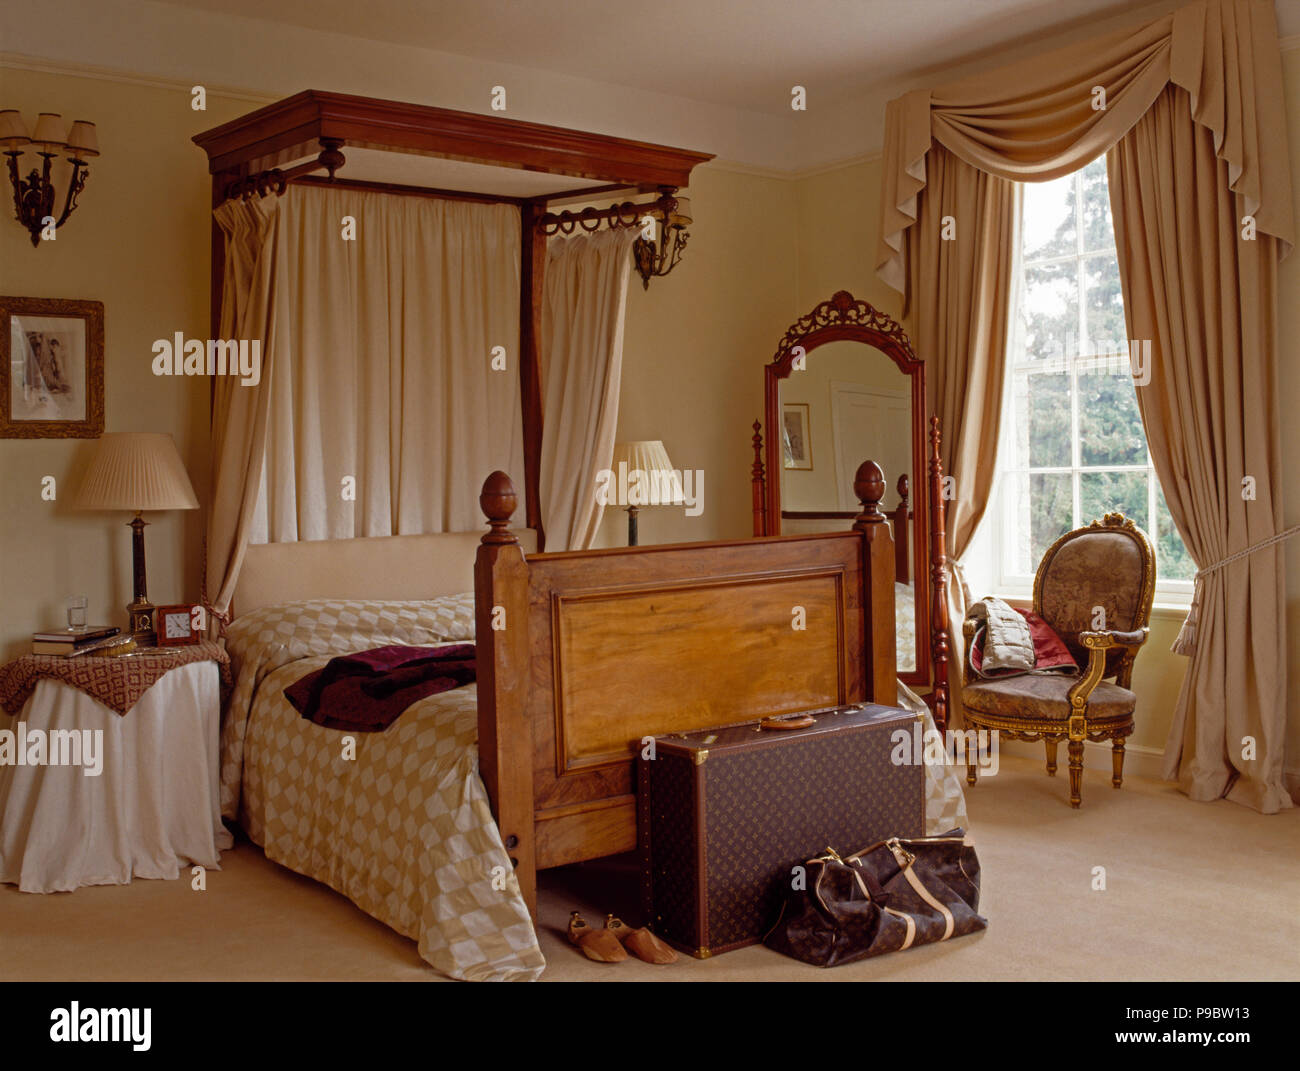 Couvre-lit et rideaux crème sur un lit à dais vintage dans un pays avec des rideaux crème et mobilier assurance Banque D'Images